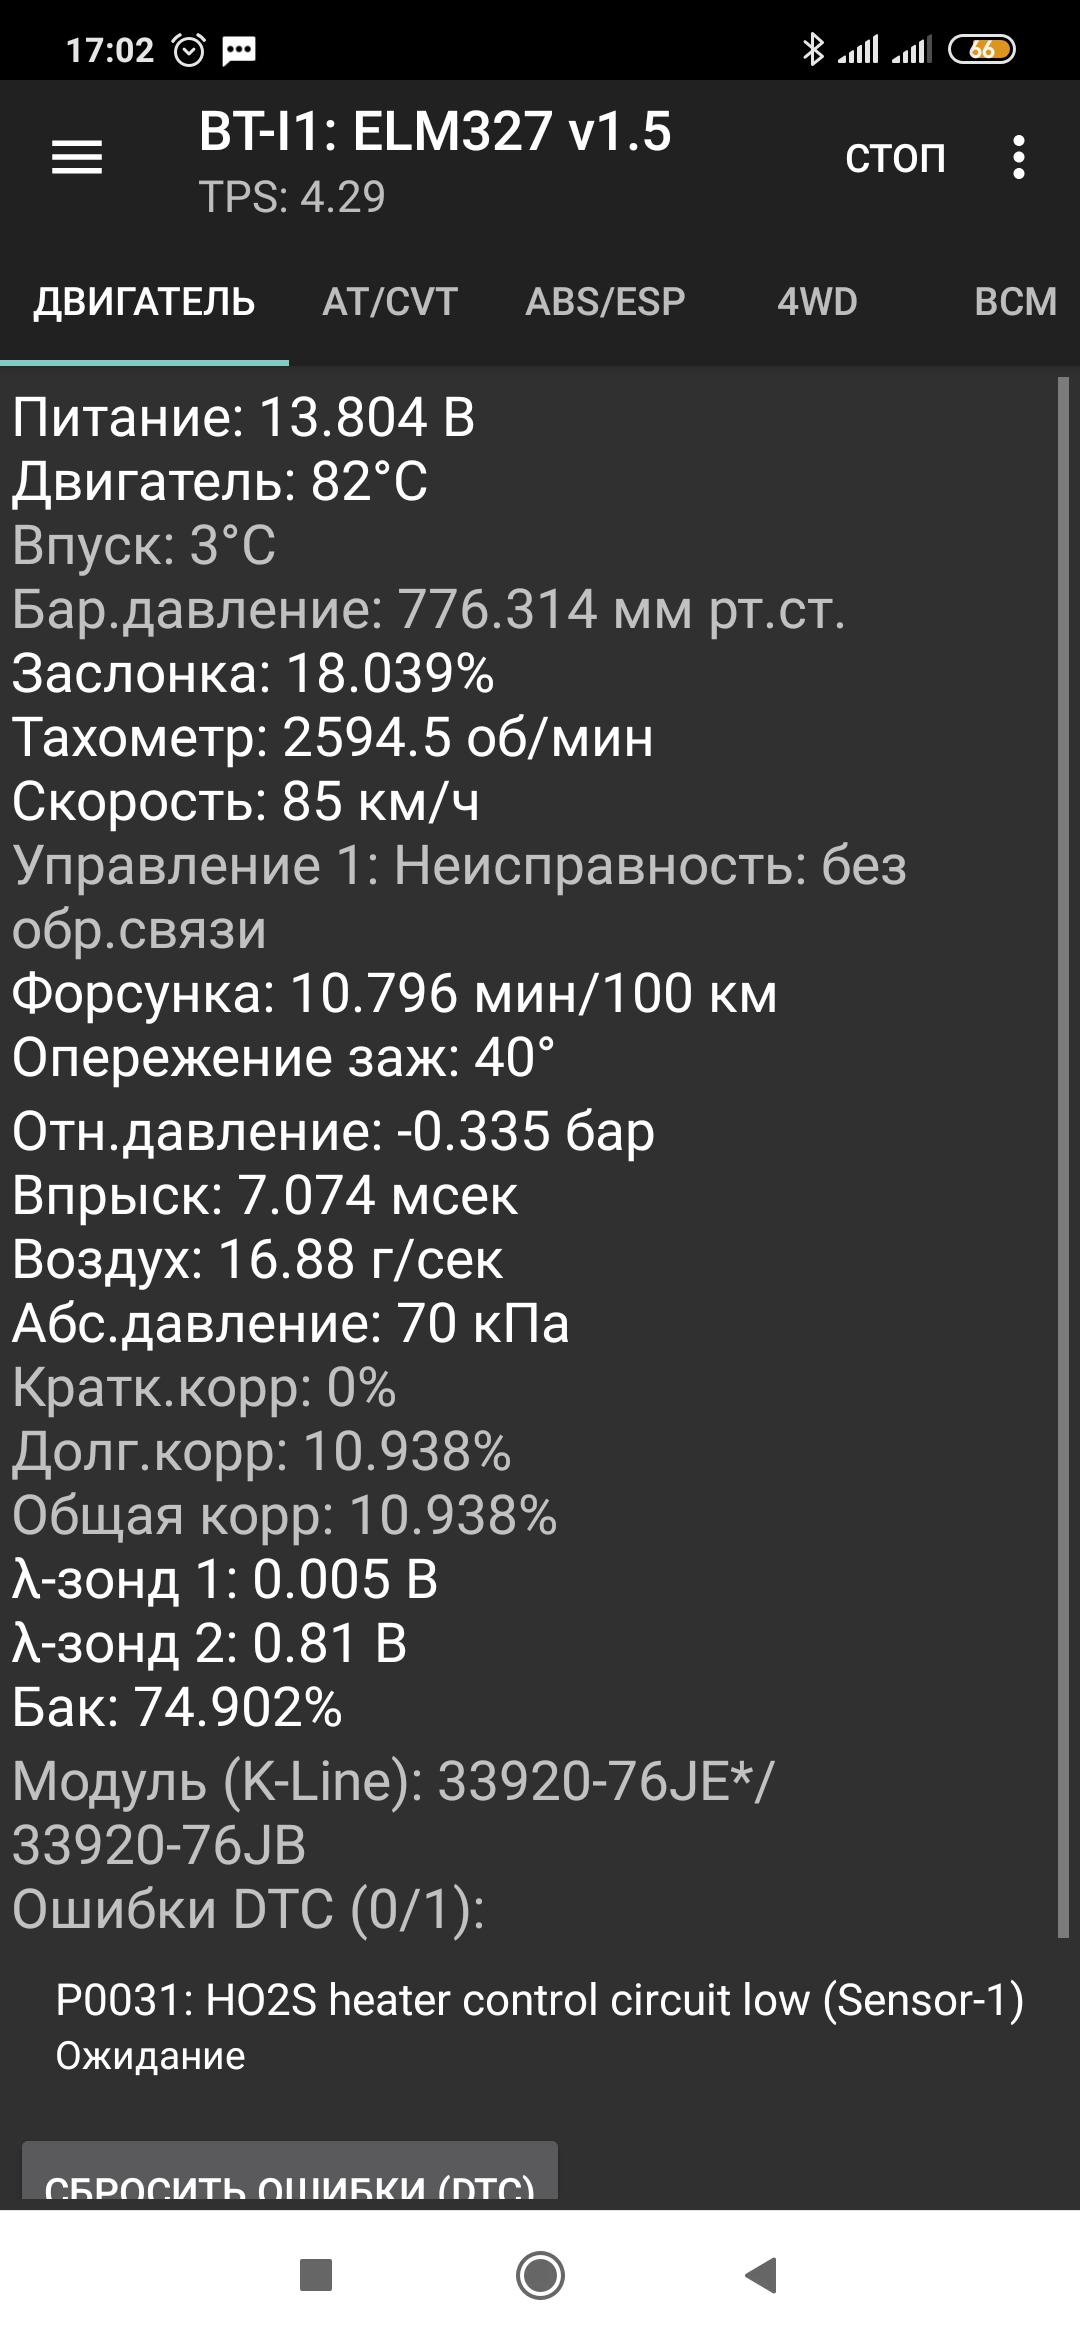 Screenshot_2020-03-22-17-02-21-019_com.malykh.szviewer.android.jpg